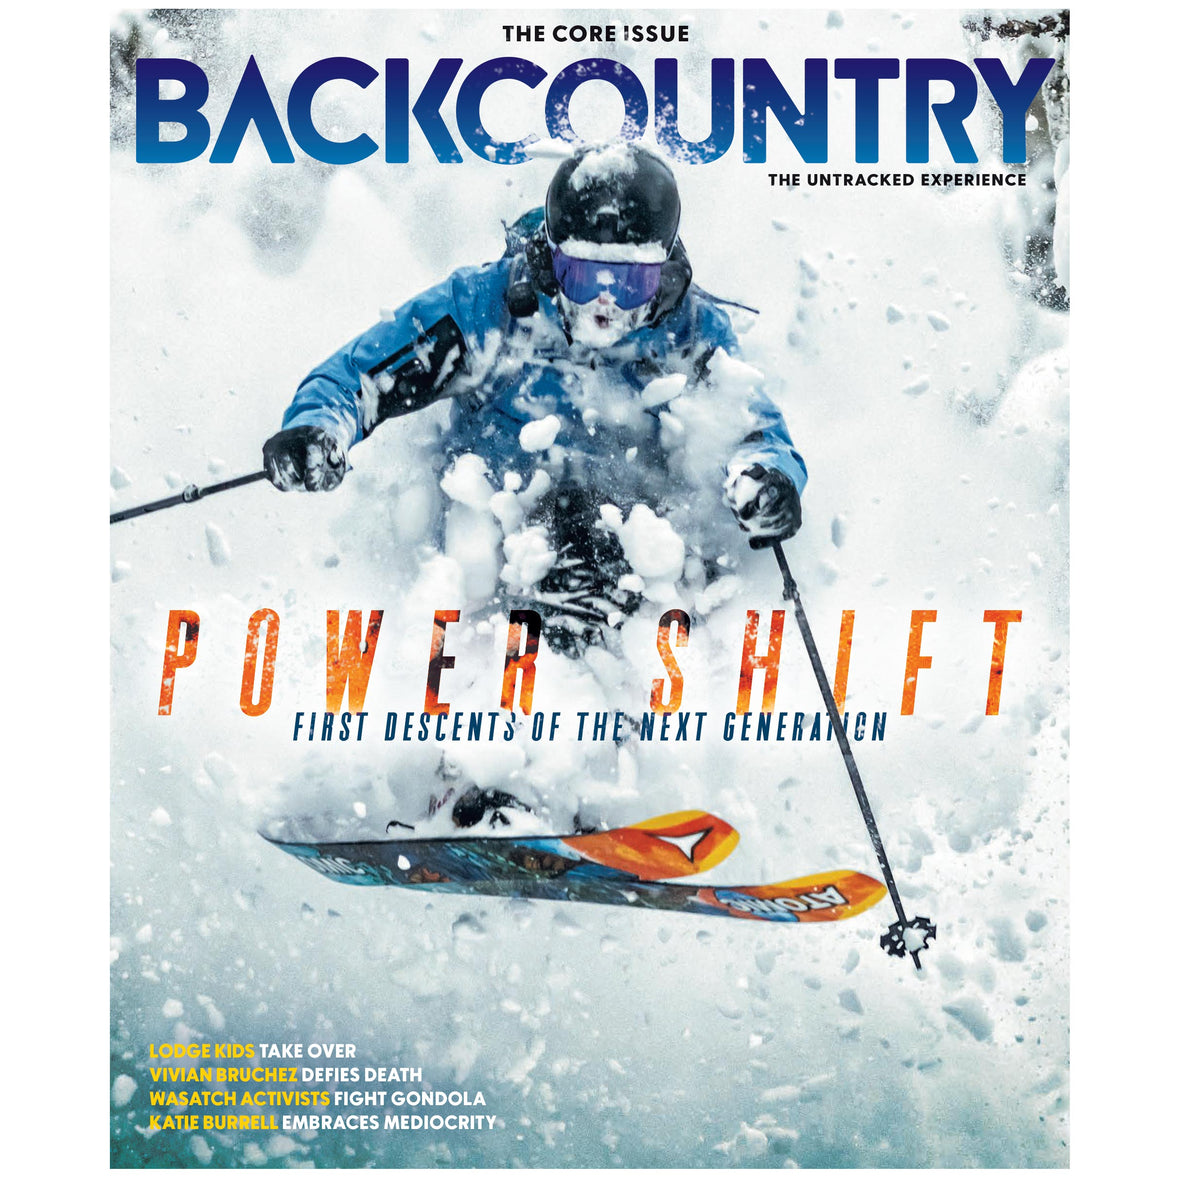 Hit The Slopes In The Latest Ski Gear - V Magazine